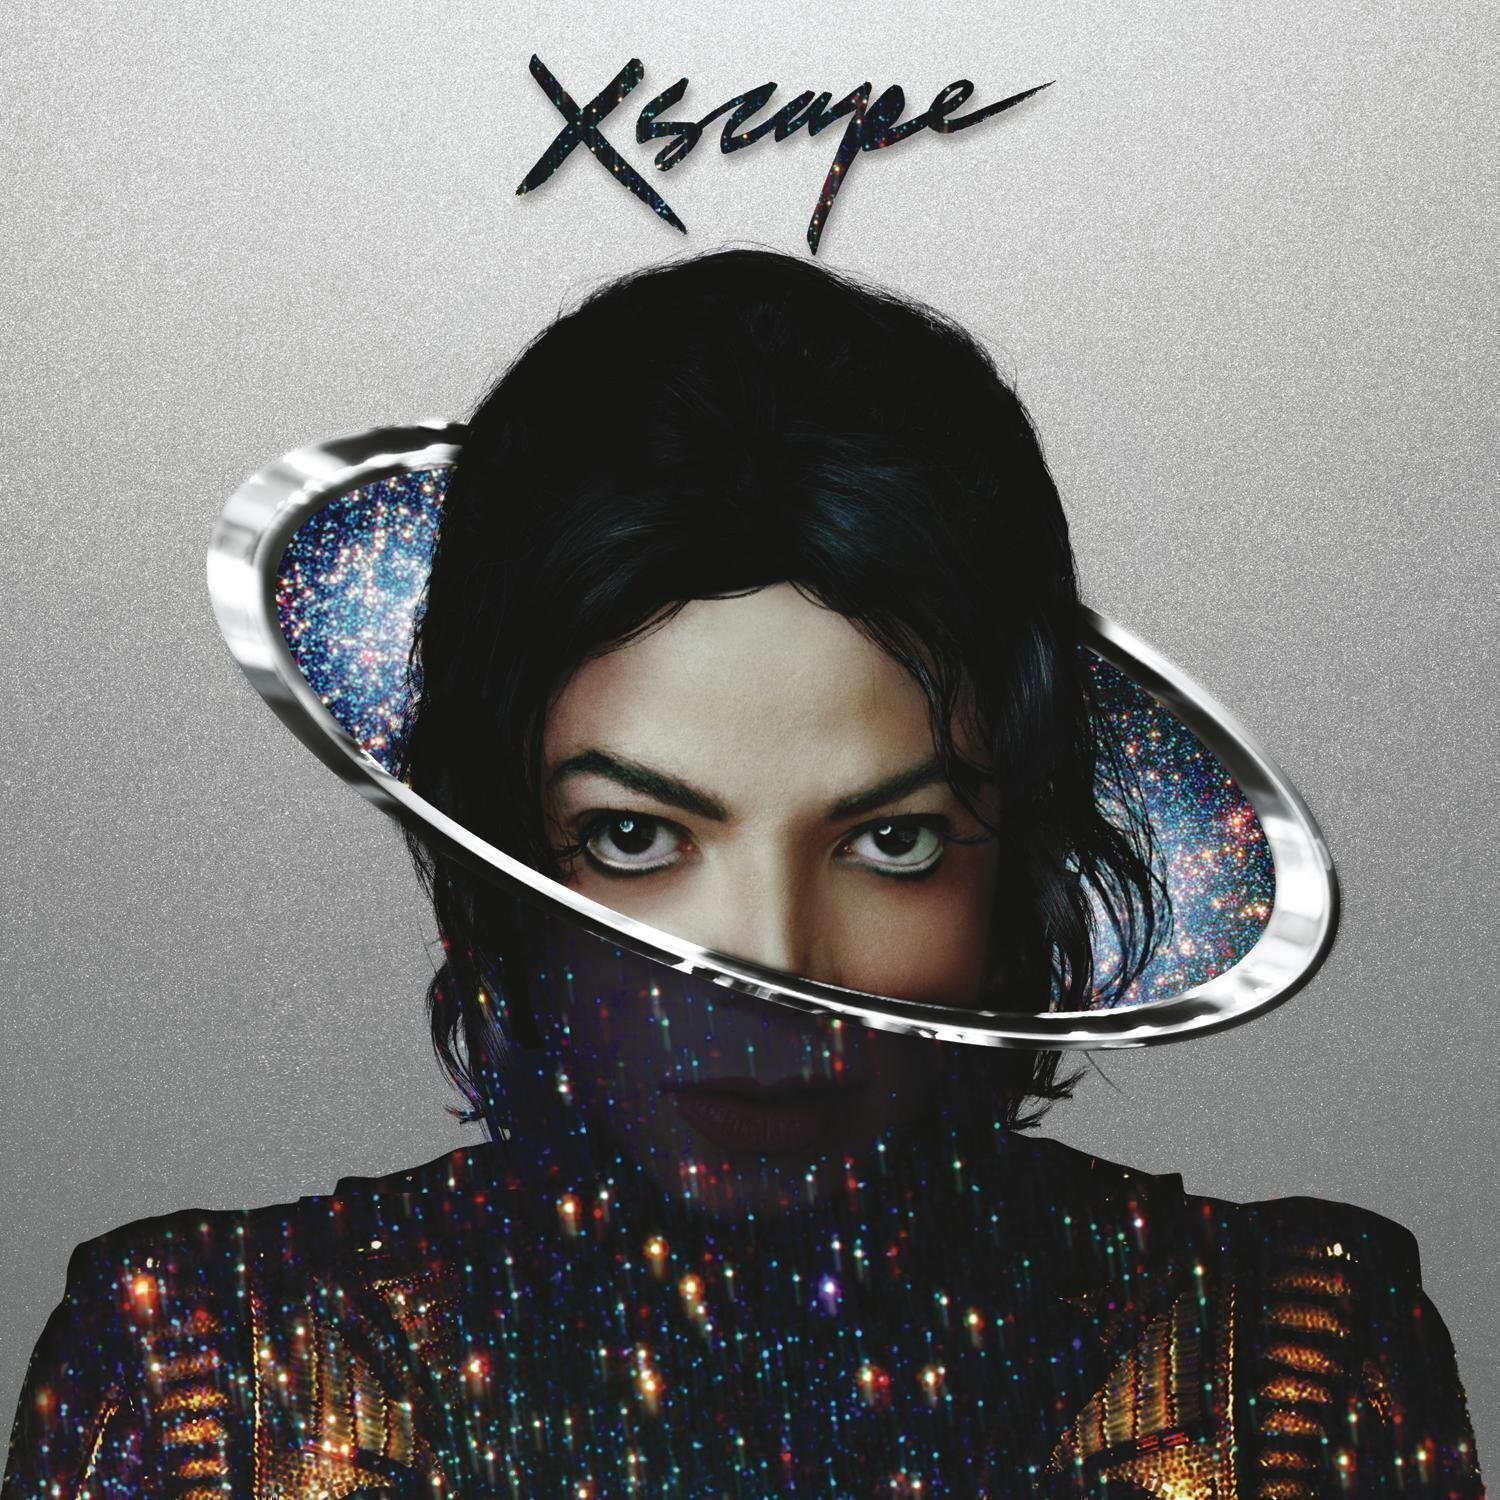 Michael jackson chicago. Michael Jackson 2014 Xscape. Michael Jackson Xscape album. Michael Jackson Chicago обложка.